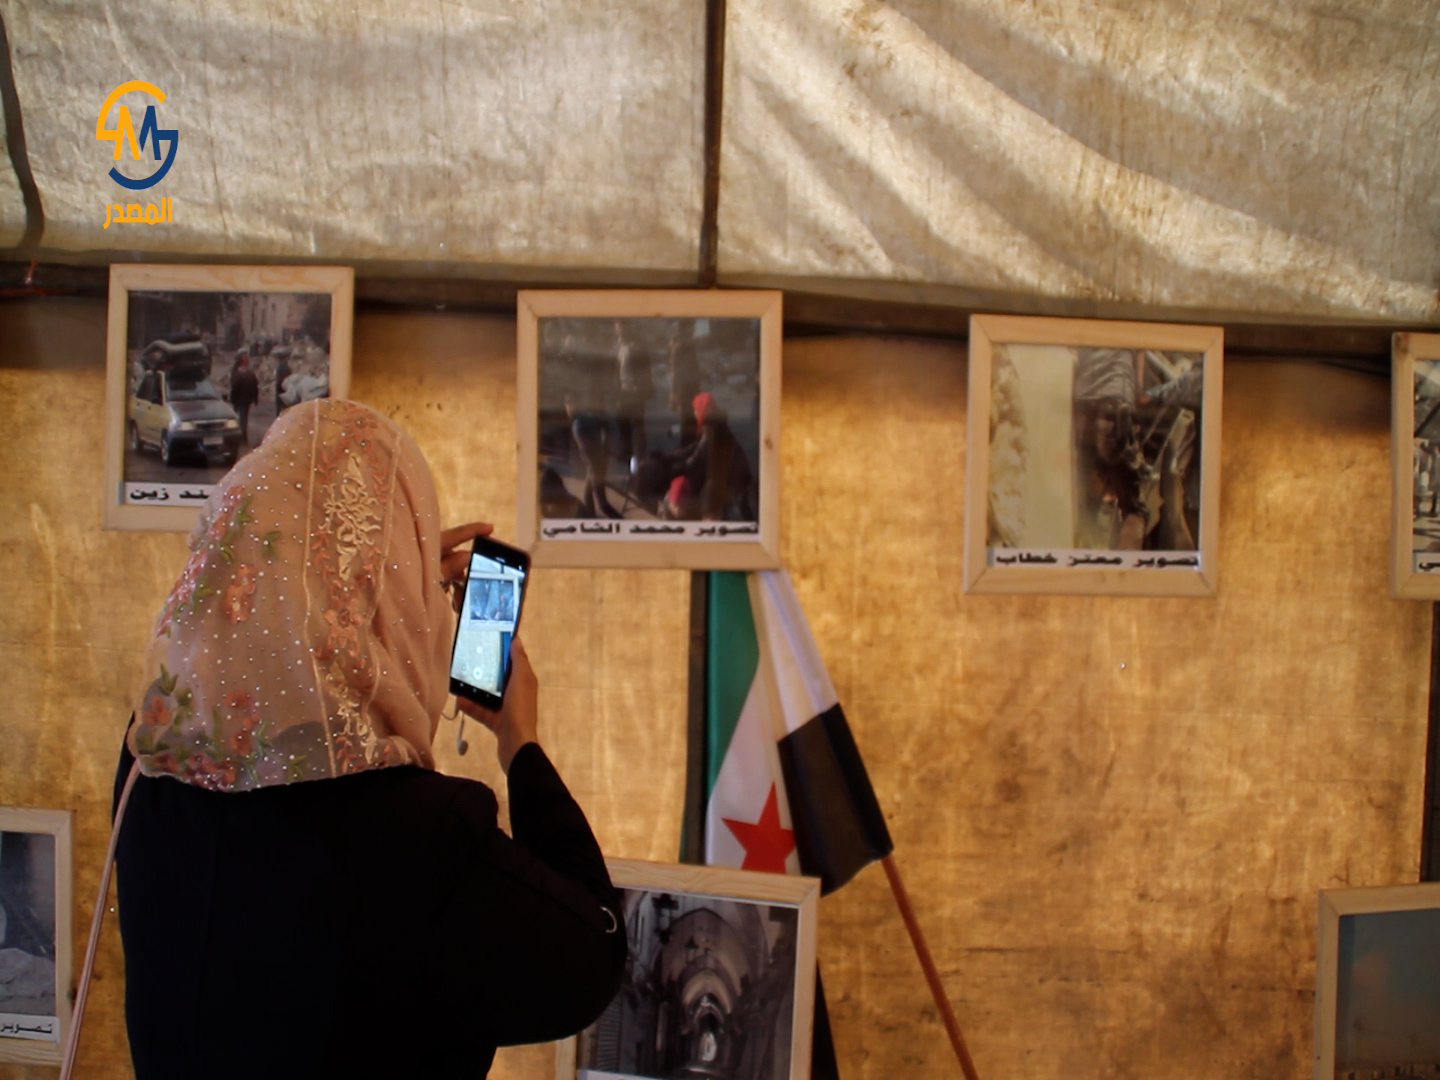 بجامعة حلب الحرة معرض للصور الفوتوغرافية